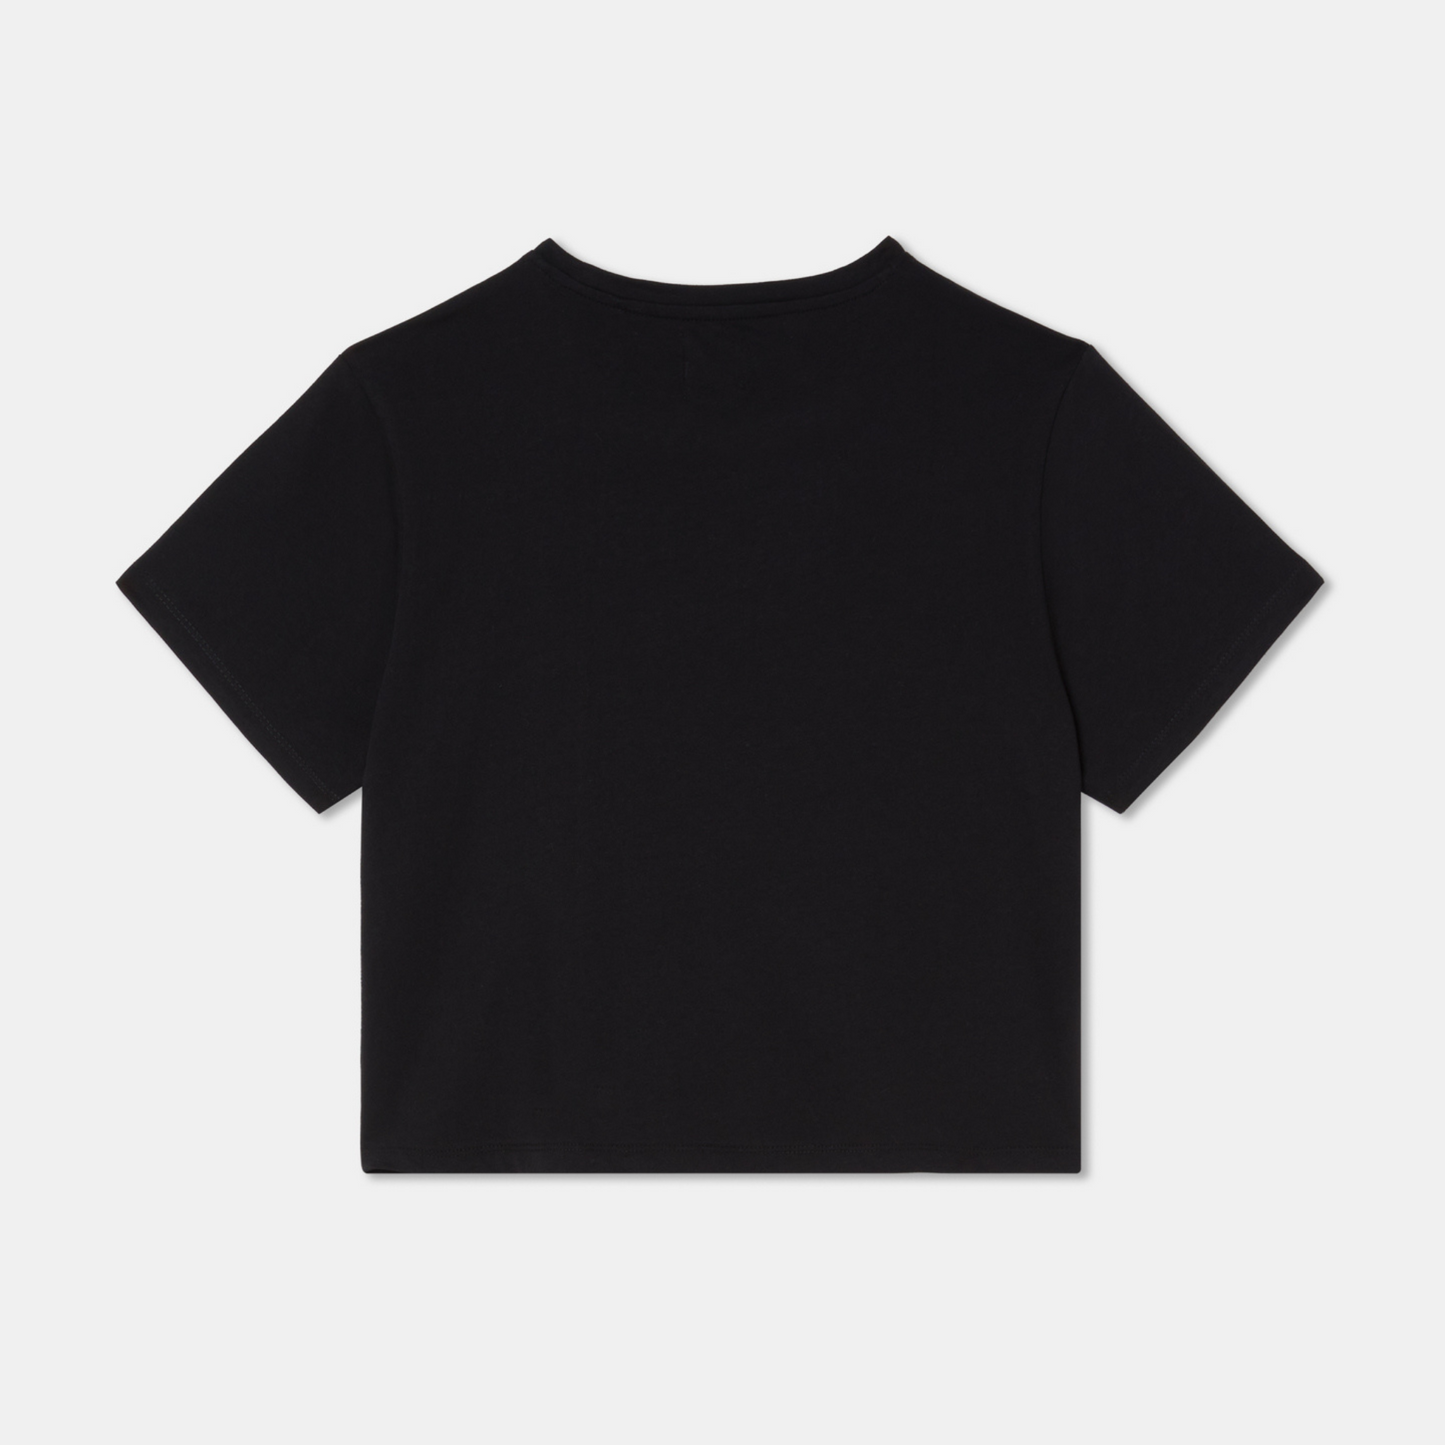 T-shirt middle crop black back